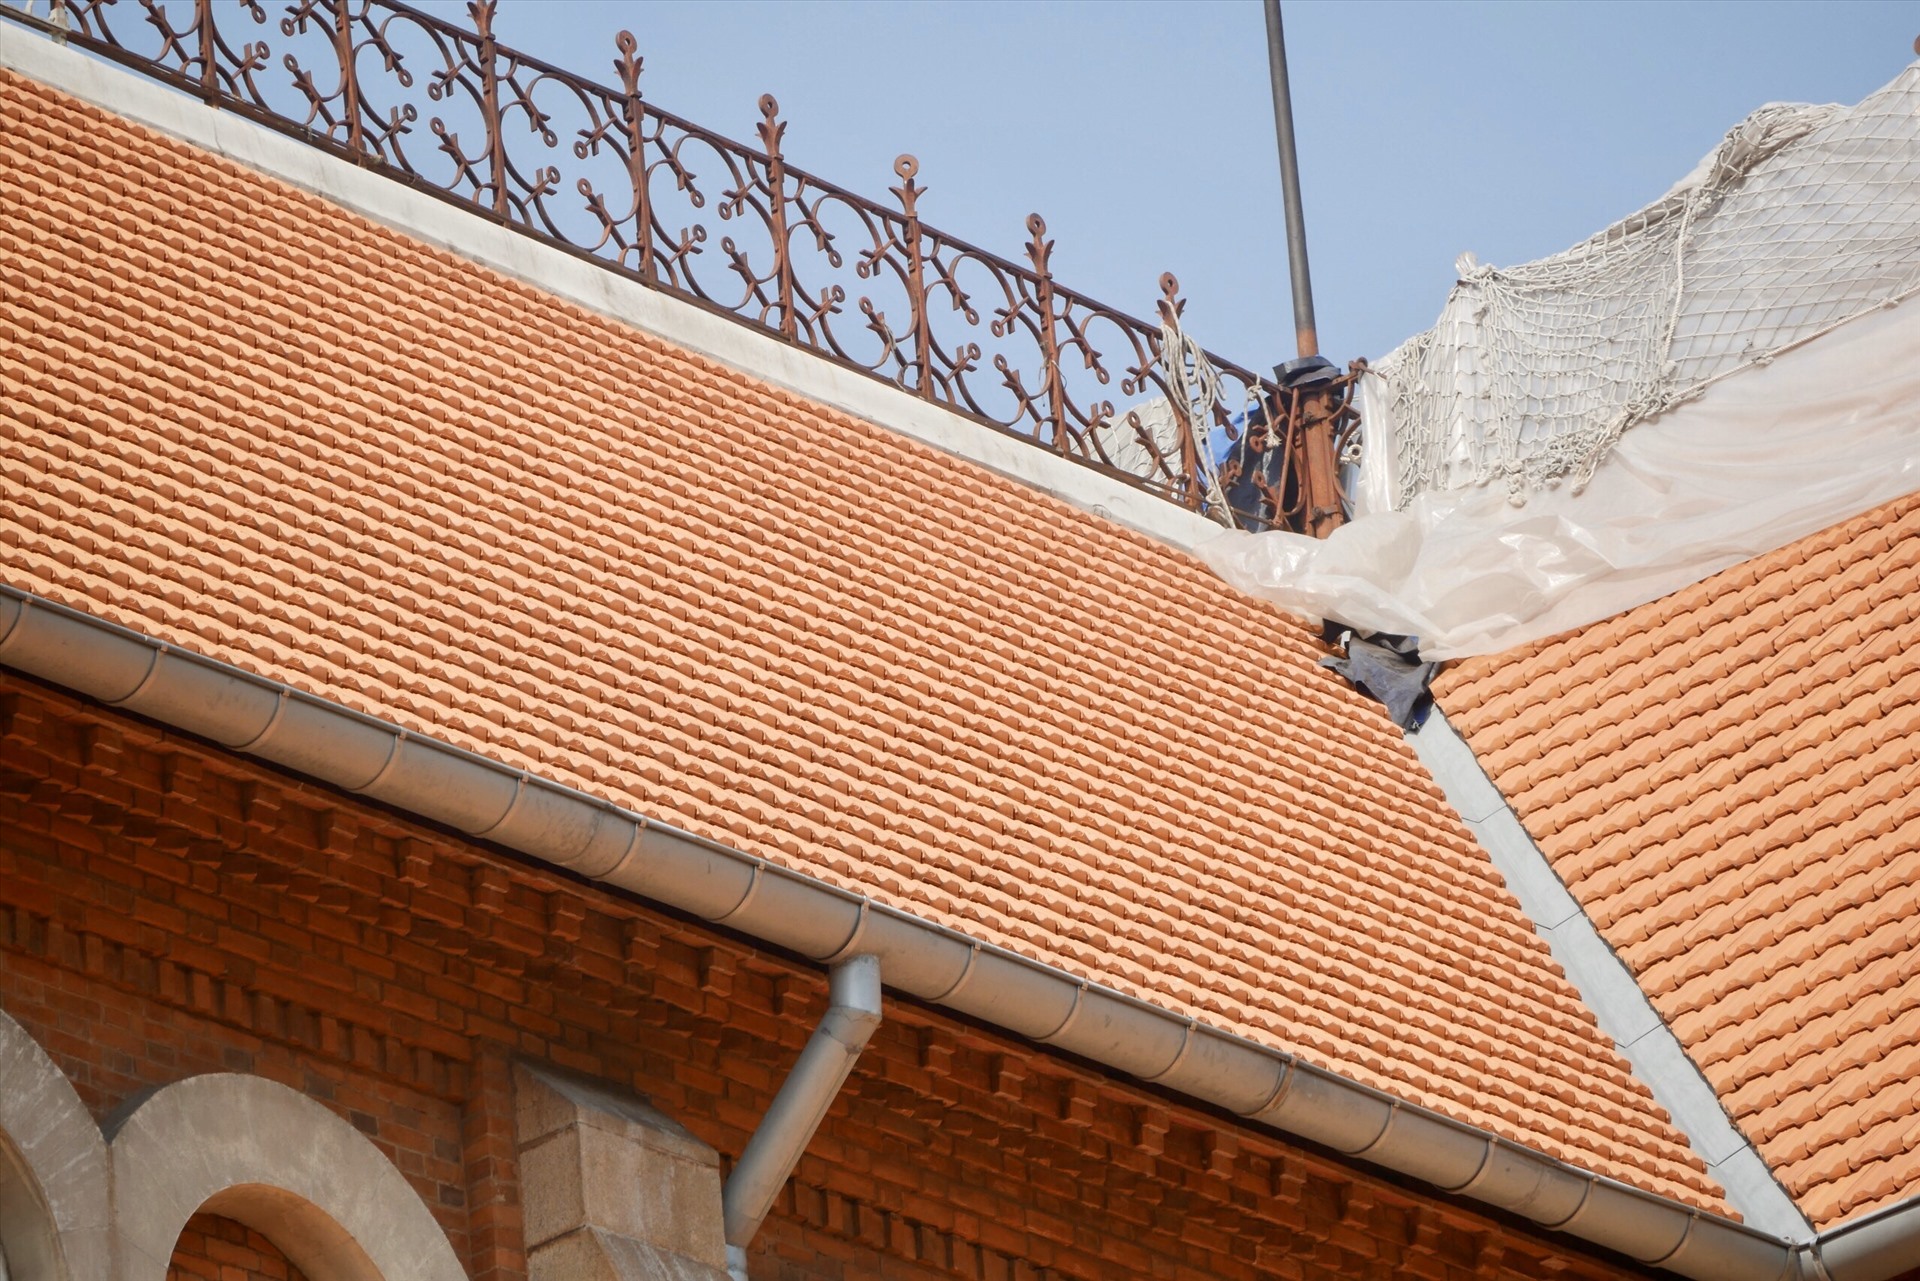 Phần mái ngói được thay mới không khác gì phần mái ngói cách đây 140 năm, tạo ra màu cam đồng bộ với các kiến trúc xung quanh.